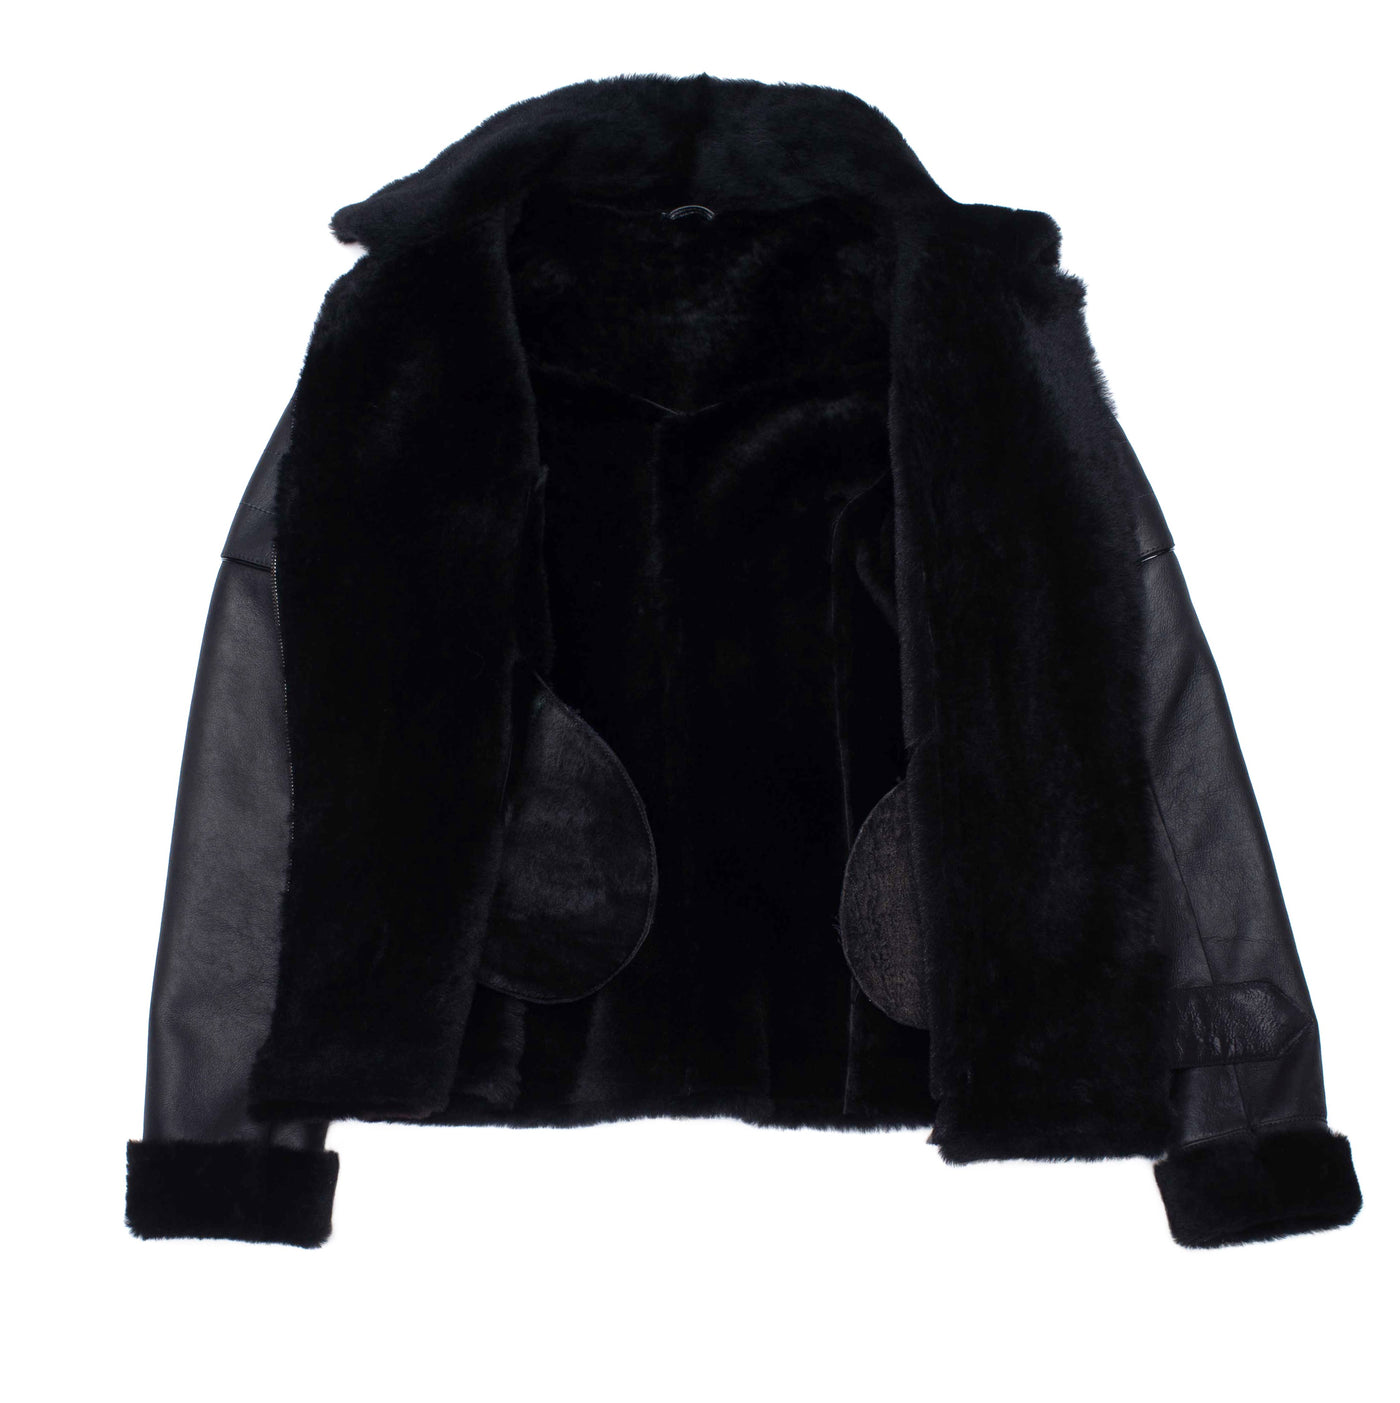 Tasha’s Black Sheepskin Shearling B-3 Bomber Style Jacket – Lusso Leather